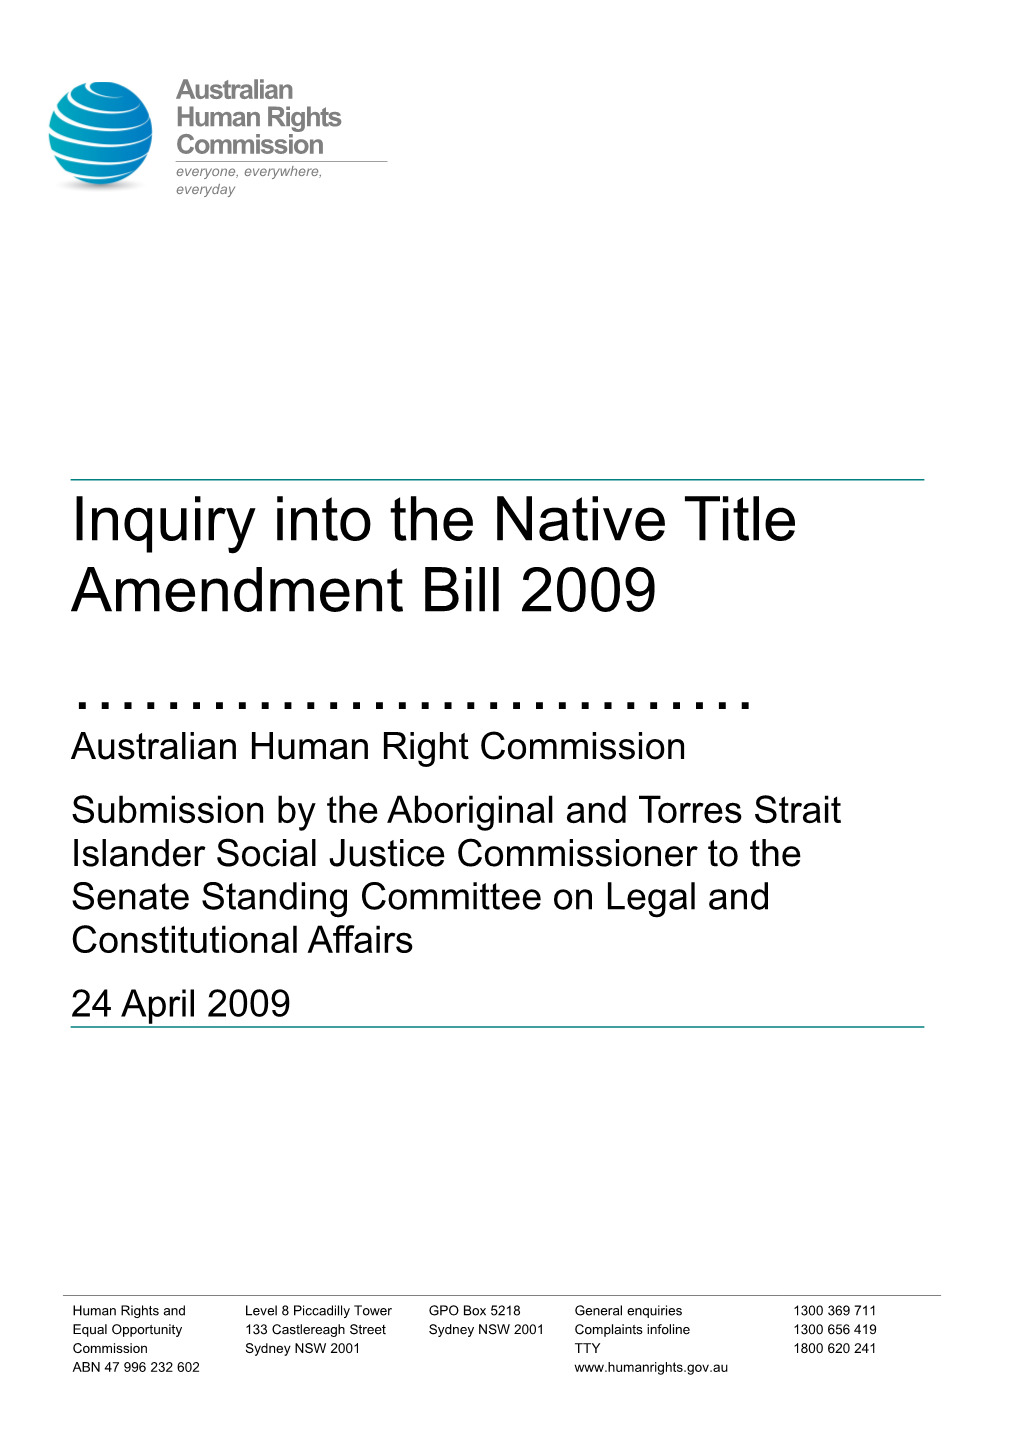 Inquiry Into the Native Title Amendment Bill 2009